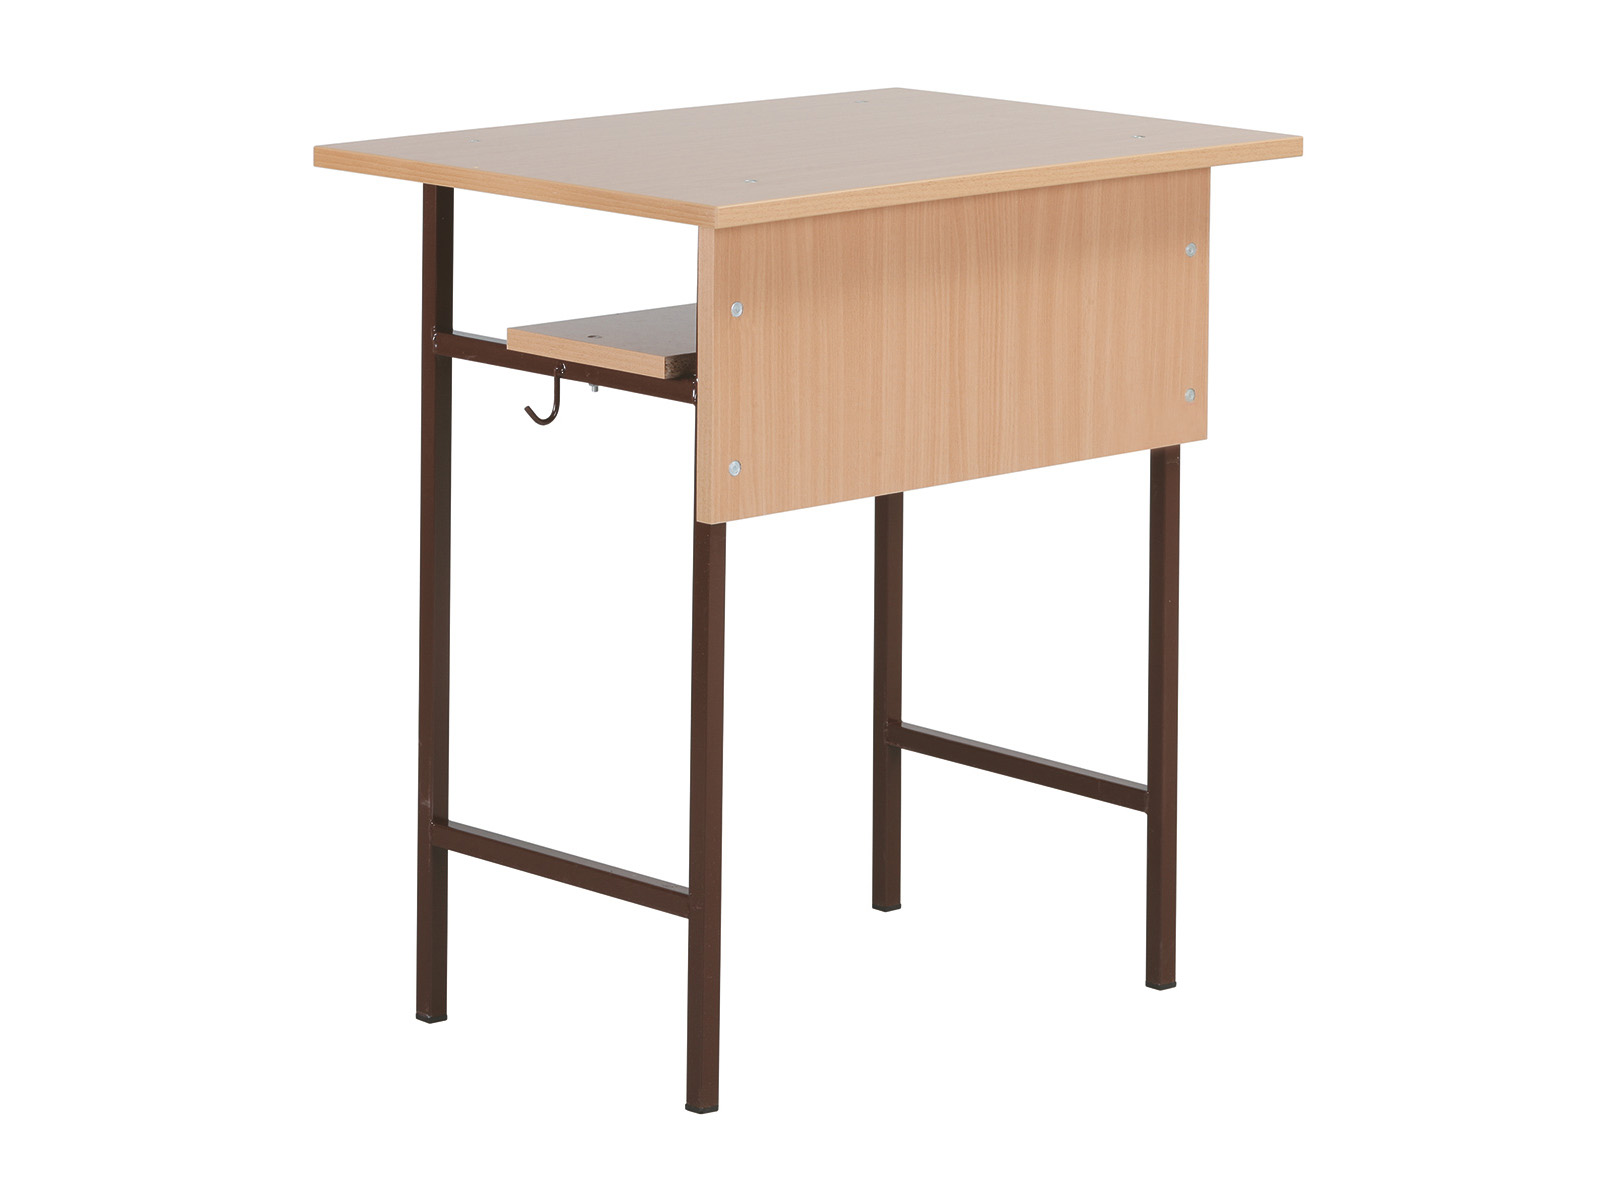 1 személyes tanulói asztal, laminált kerekített